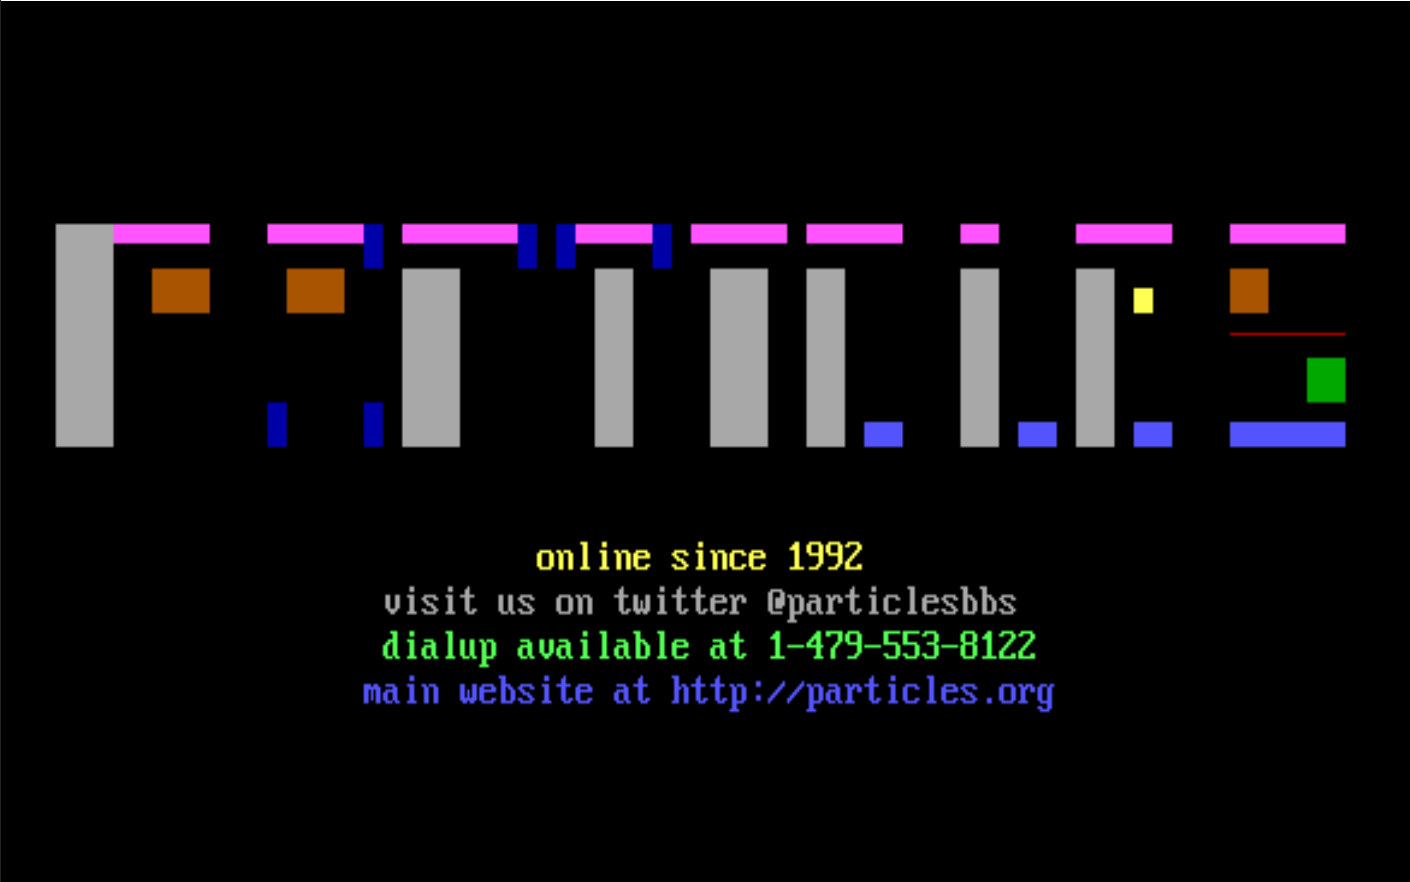 Приветственная страница ANSI доски объявлений Брайана Грина “Particles”, которой он управляет с 1992 года  